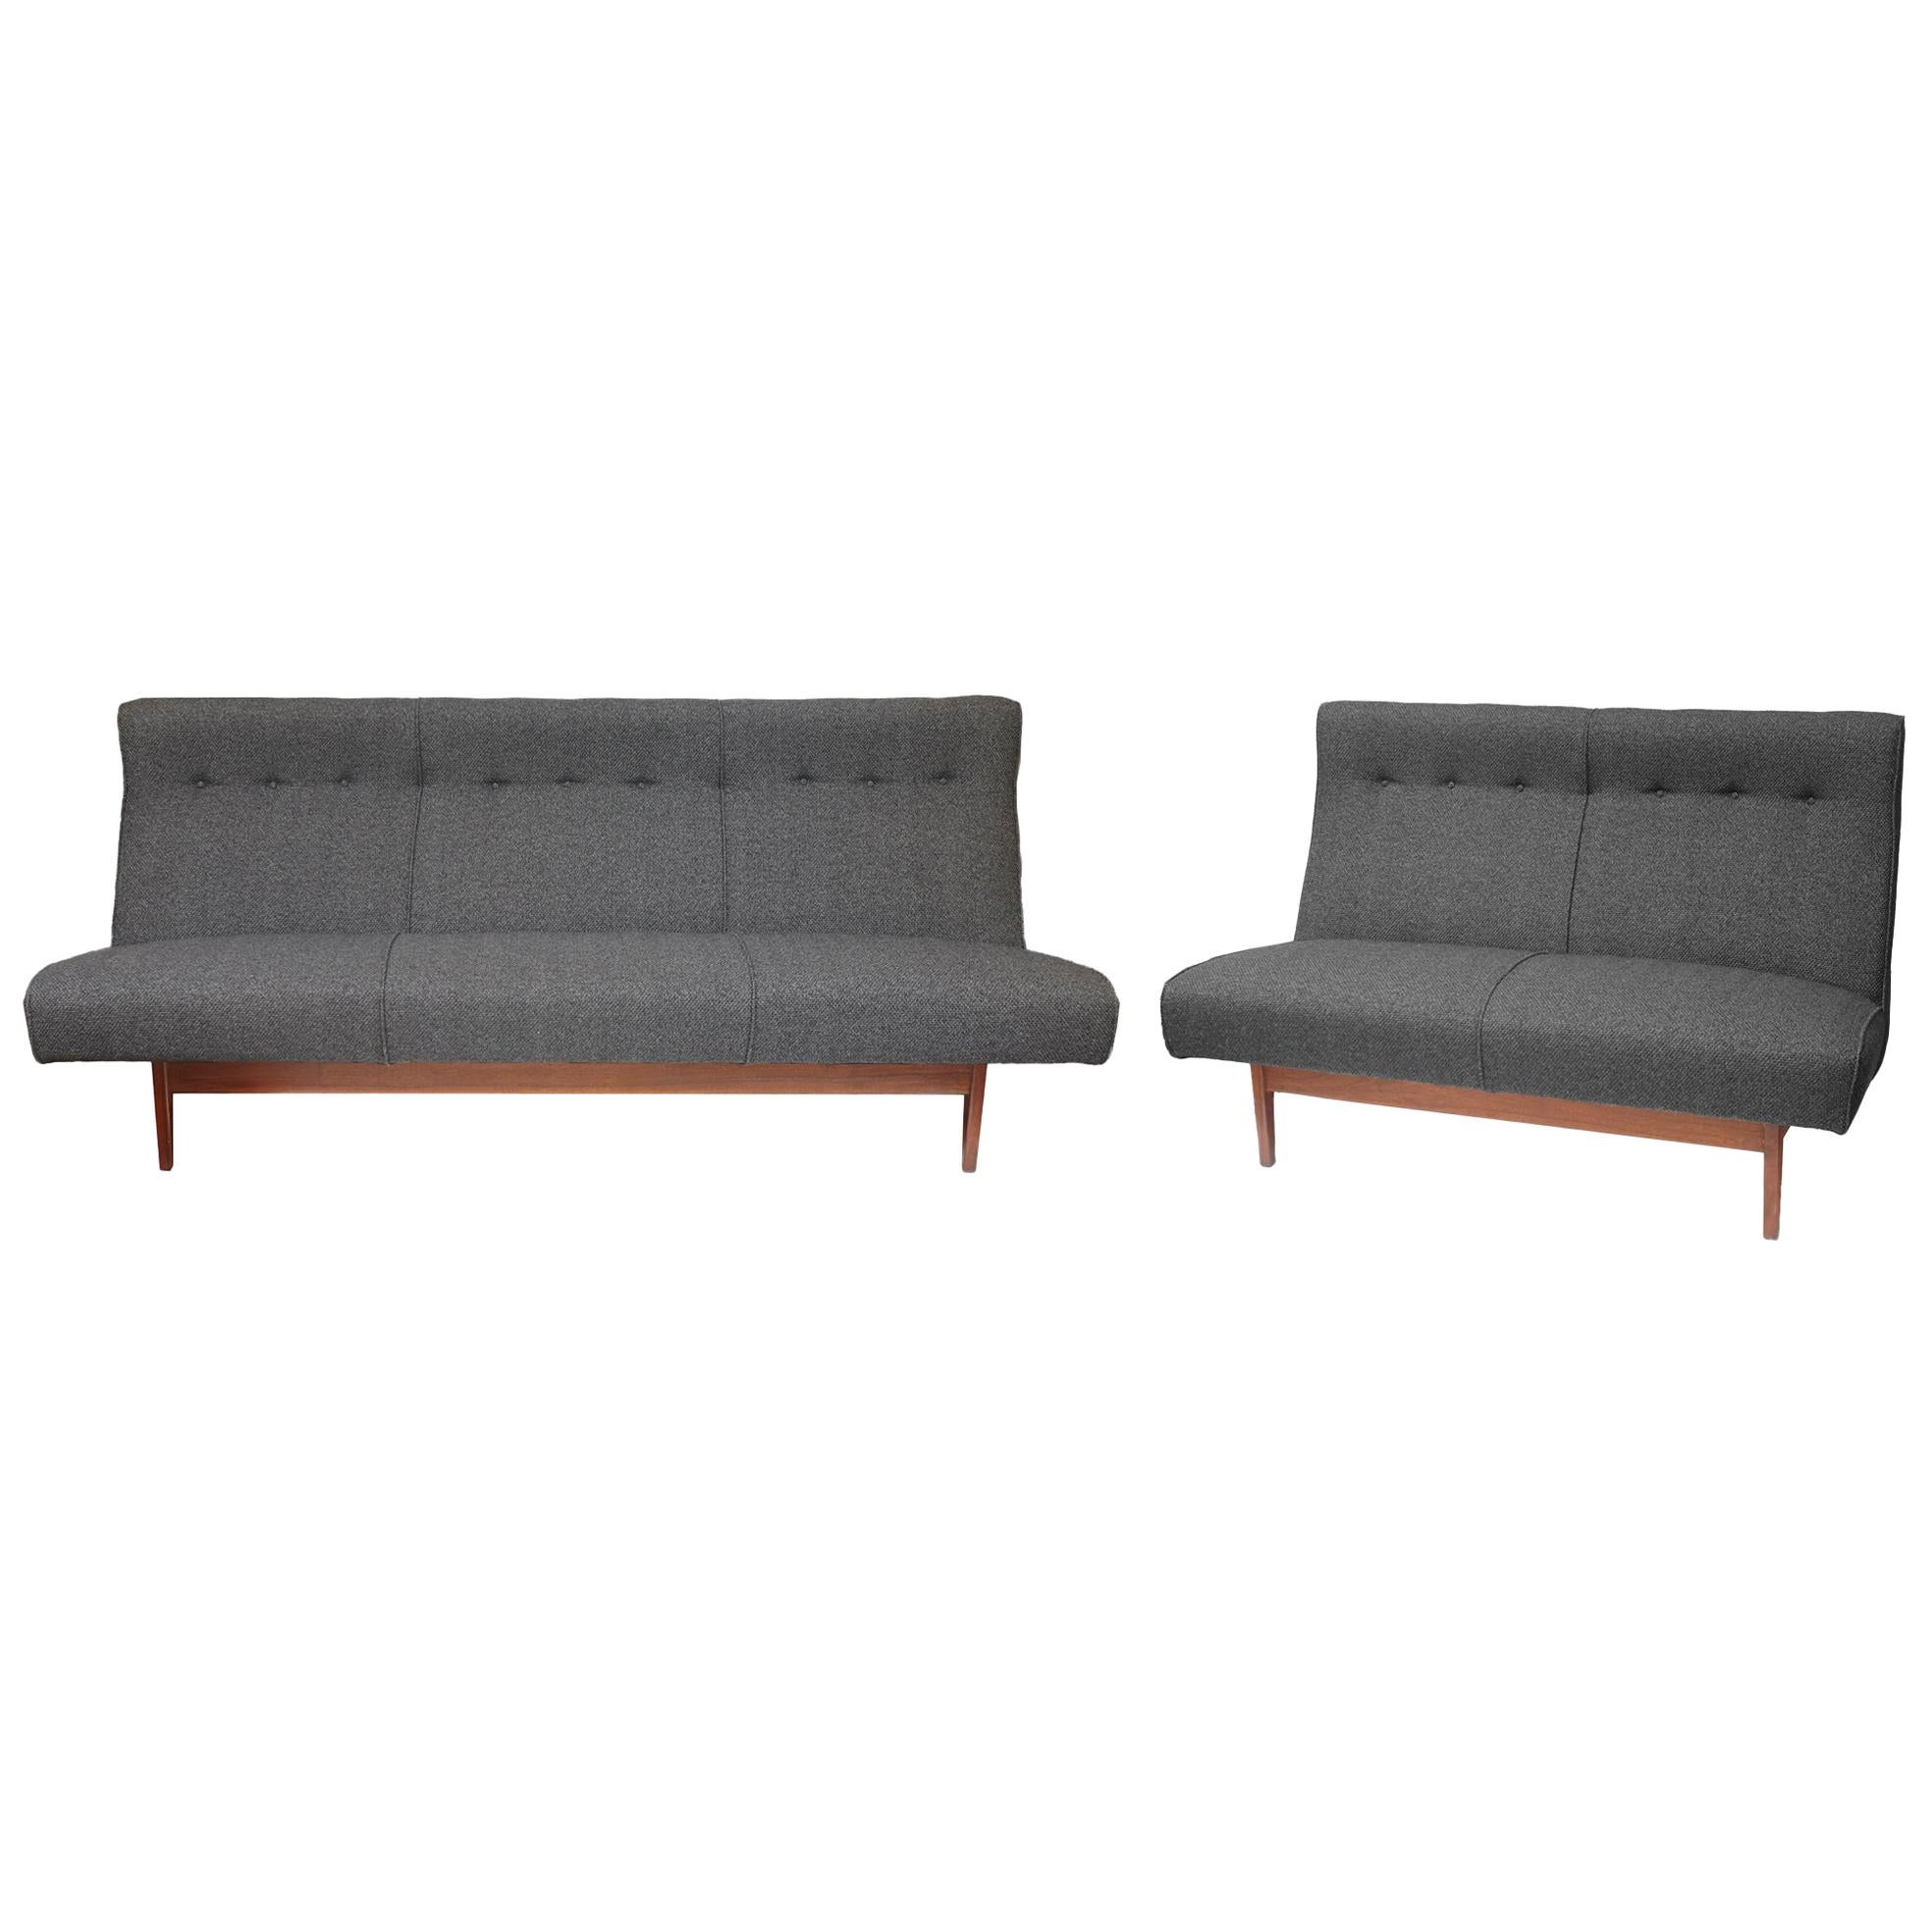 Jens Risom Charcoal Grey Sofa and Matching Love Seat Model U251